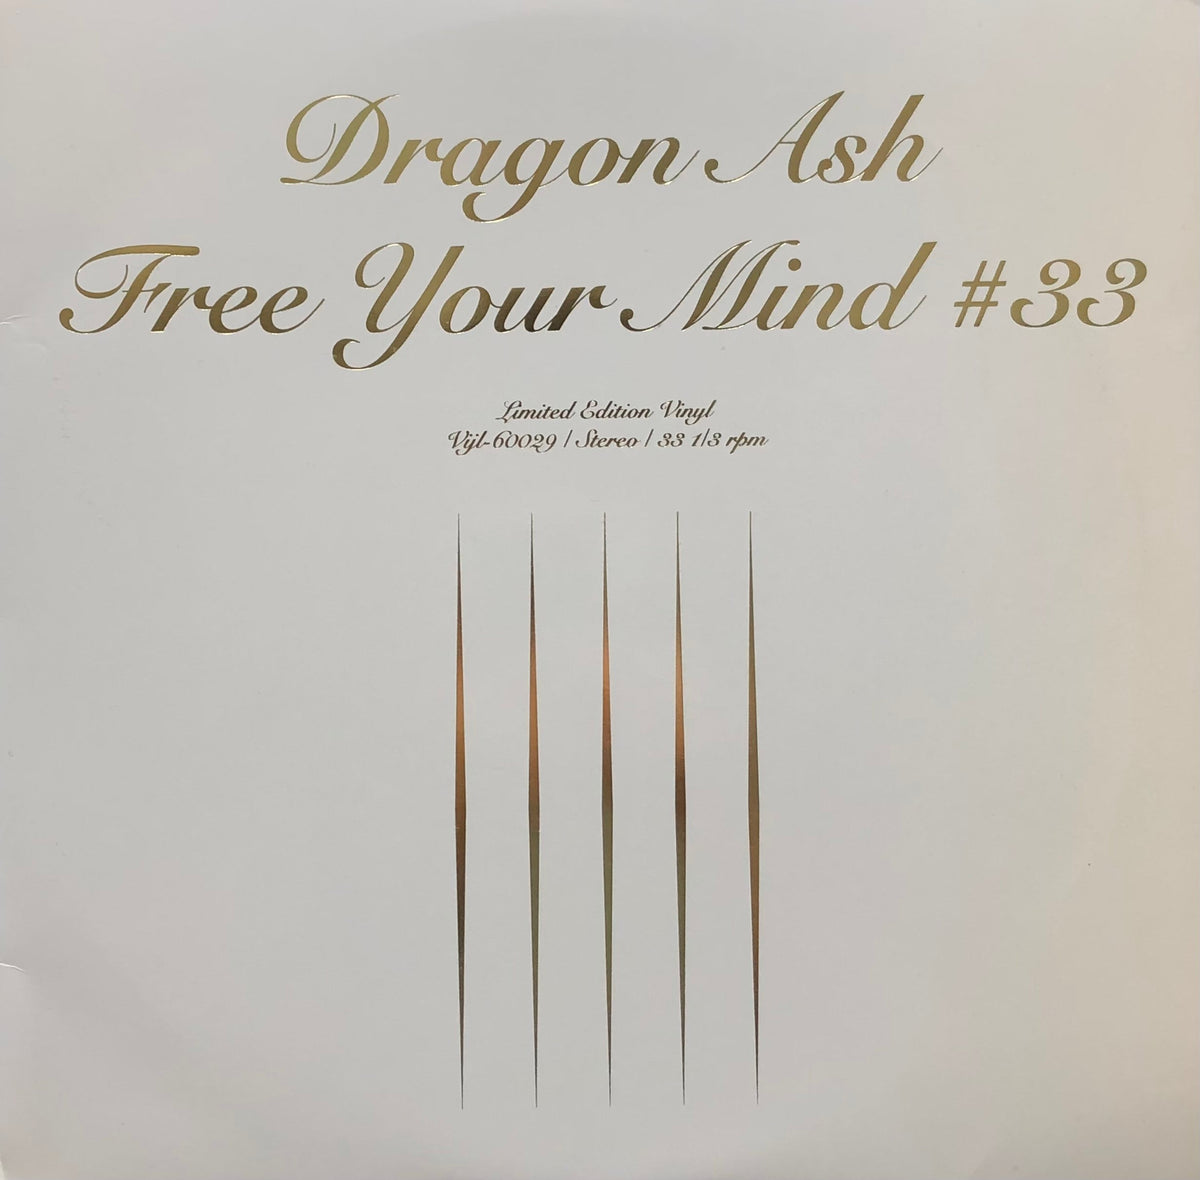 ②BabyGiDragon Ash Free Your Mind #33 プロモ 非売品 CD